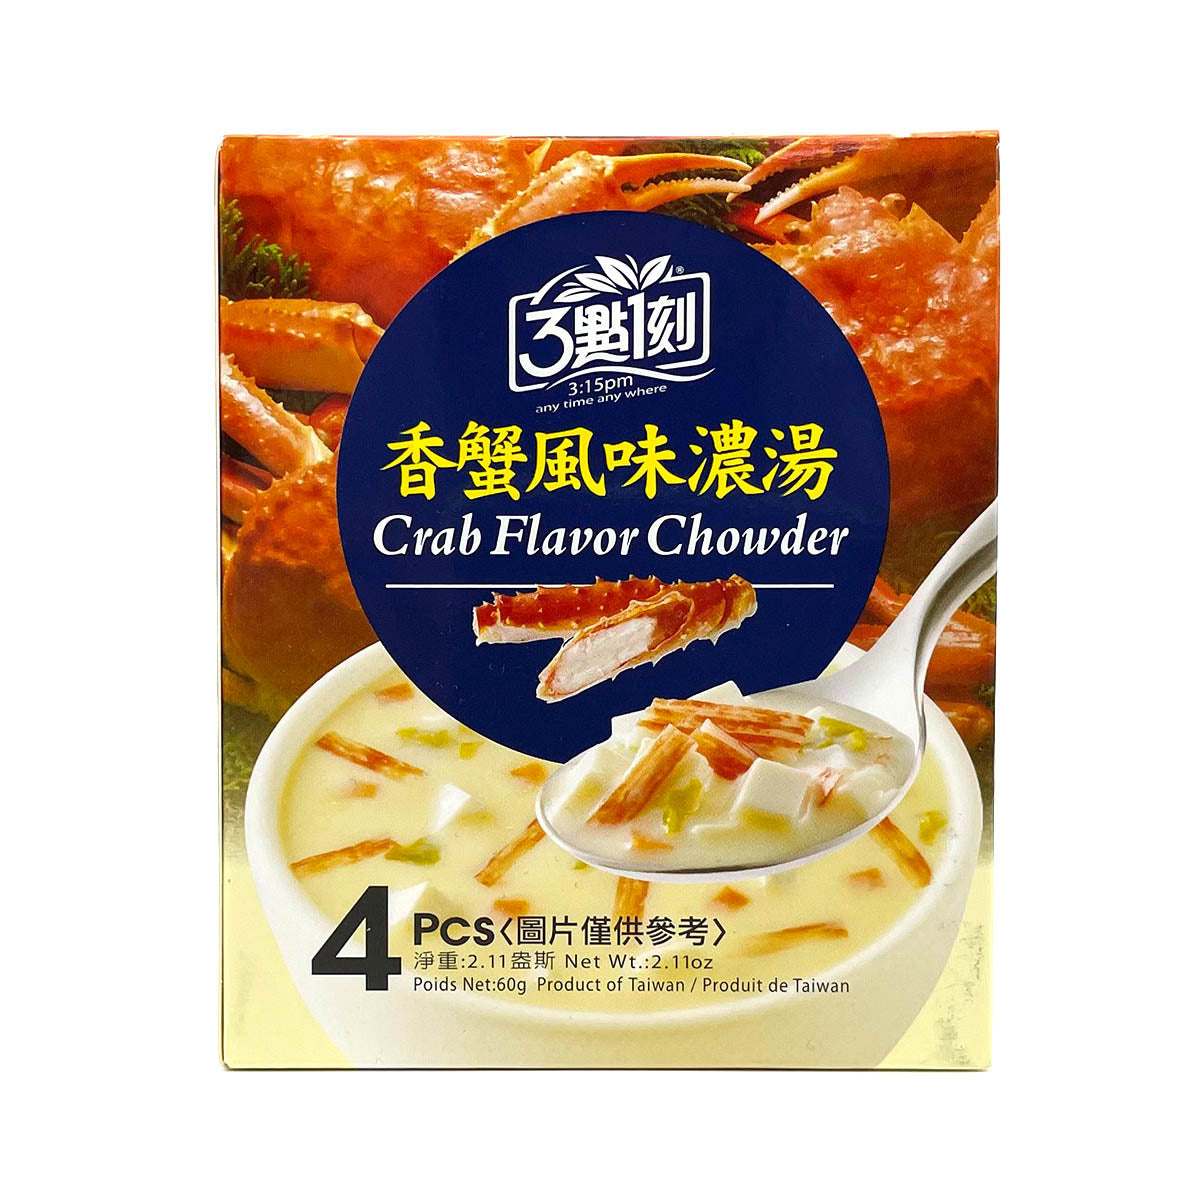 【 3:15PM 】 Crab Falvor Chowder 60g 4pcs